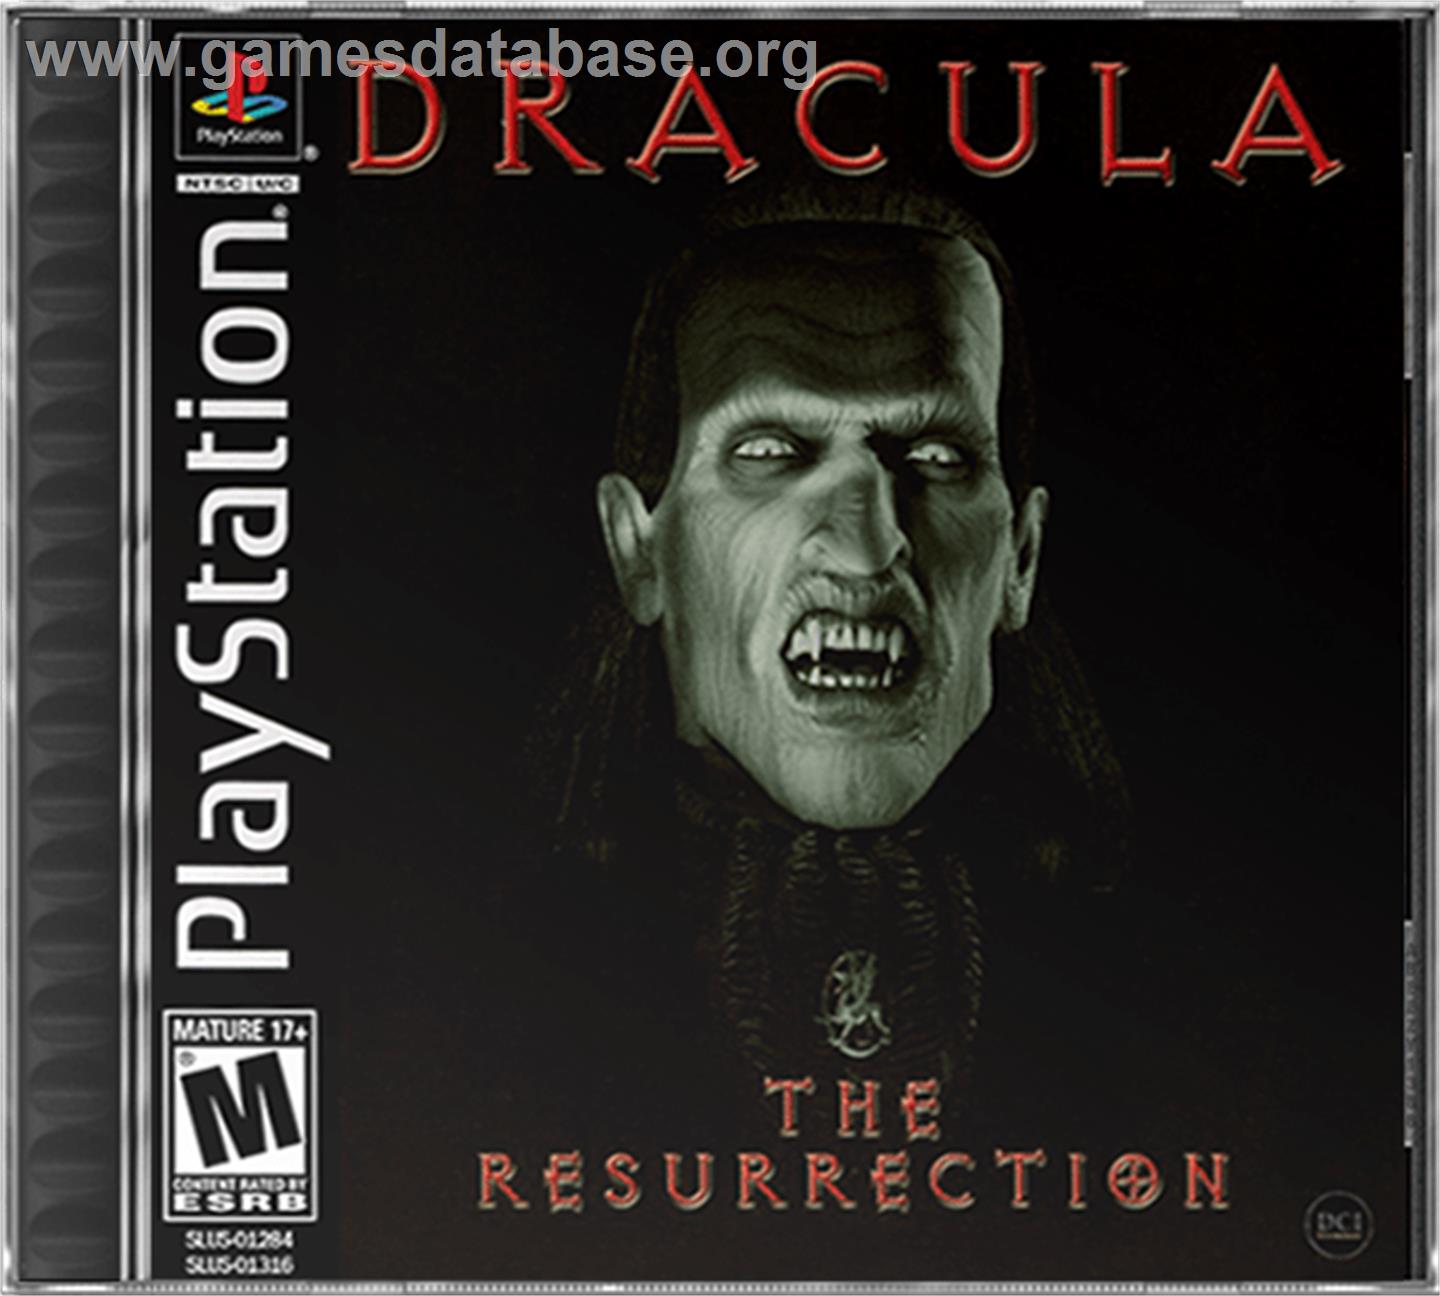 Dracula: The Resurrection - Sony Playstation - Artwork - Box